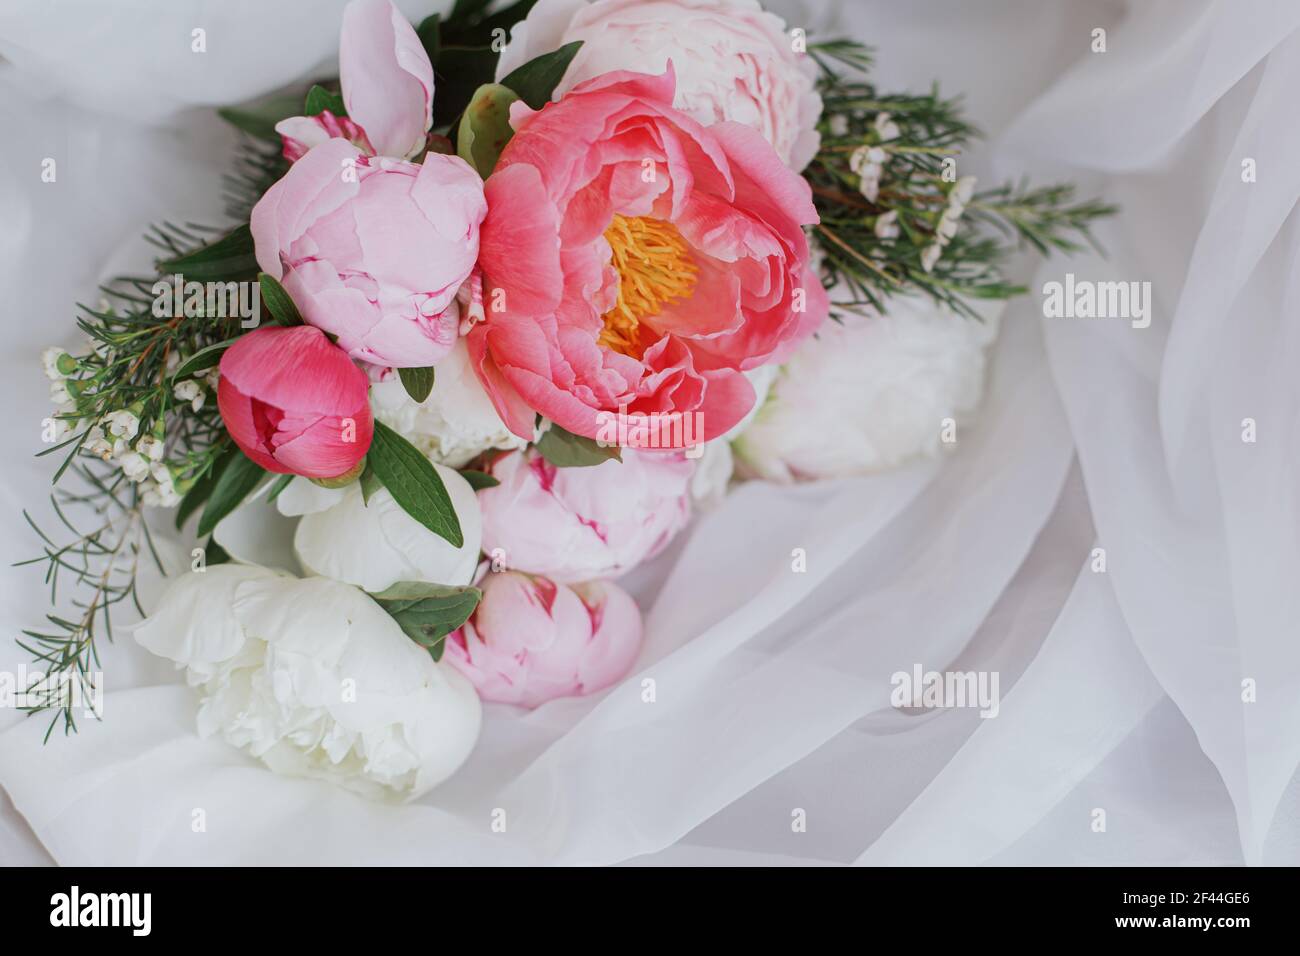 Magnifique bouquet de pivoines élégant sur tissu blanc doux. Fleurs de pivoine  rose et blanche sur tulle sur chaise rustique en bois. Bonne journée des  mères. Mornin de la mariée Photo Stock -